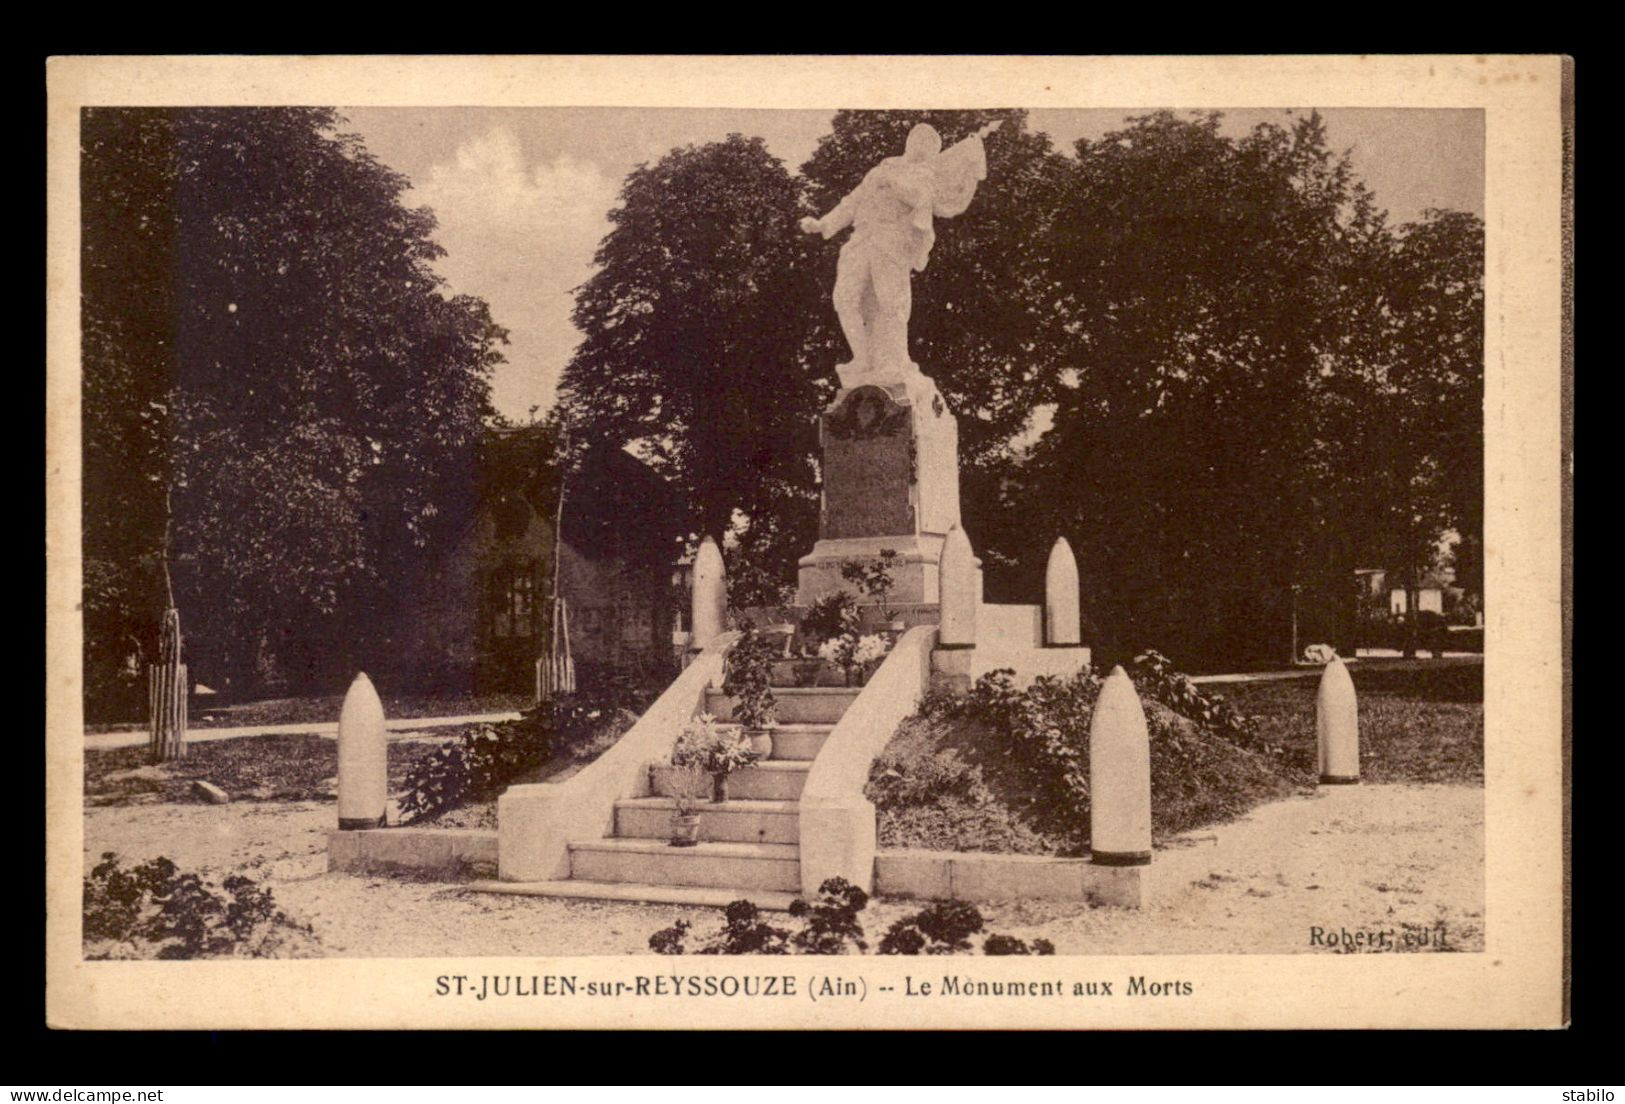 01 - ST-JULIEN-SUR-REYSSOUZE - MONUMENT AUX MORTS - Unclassified